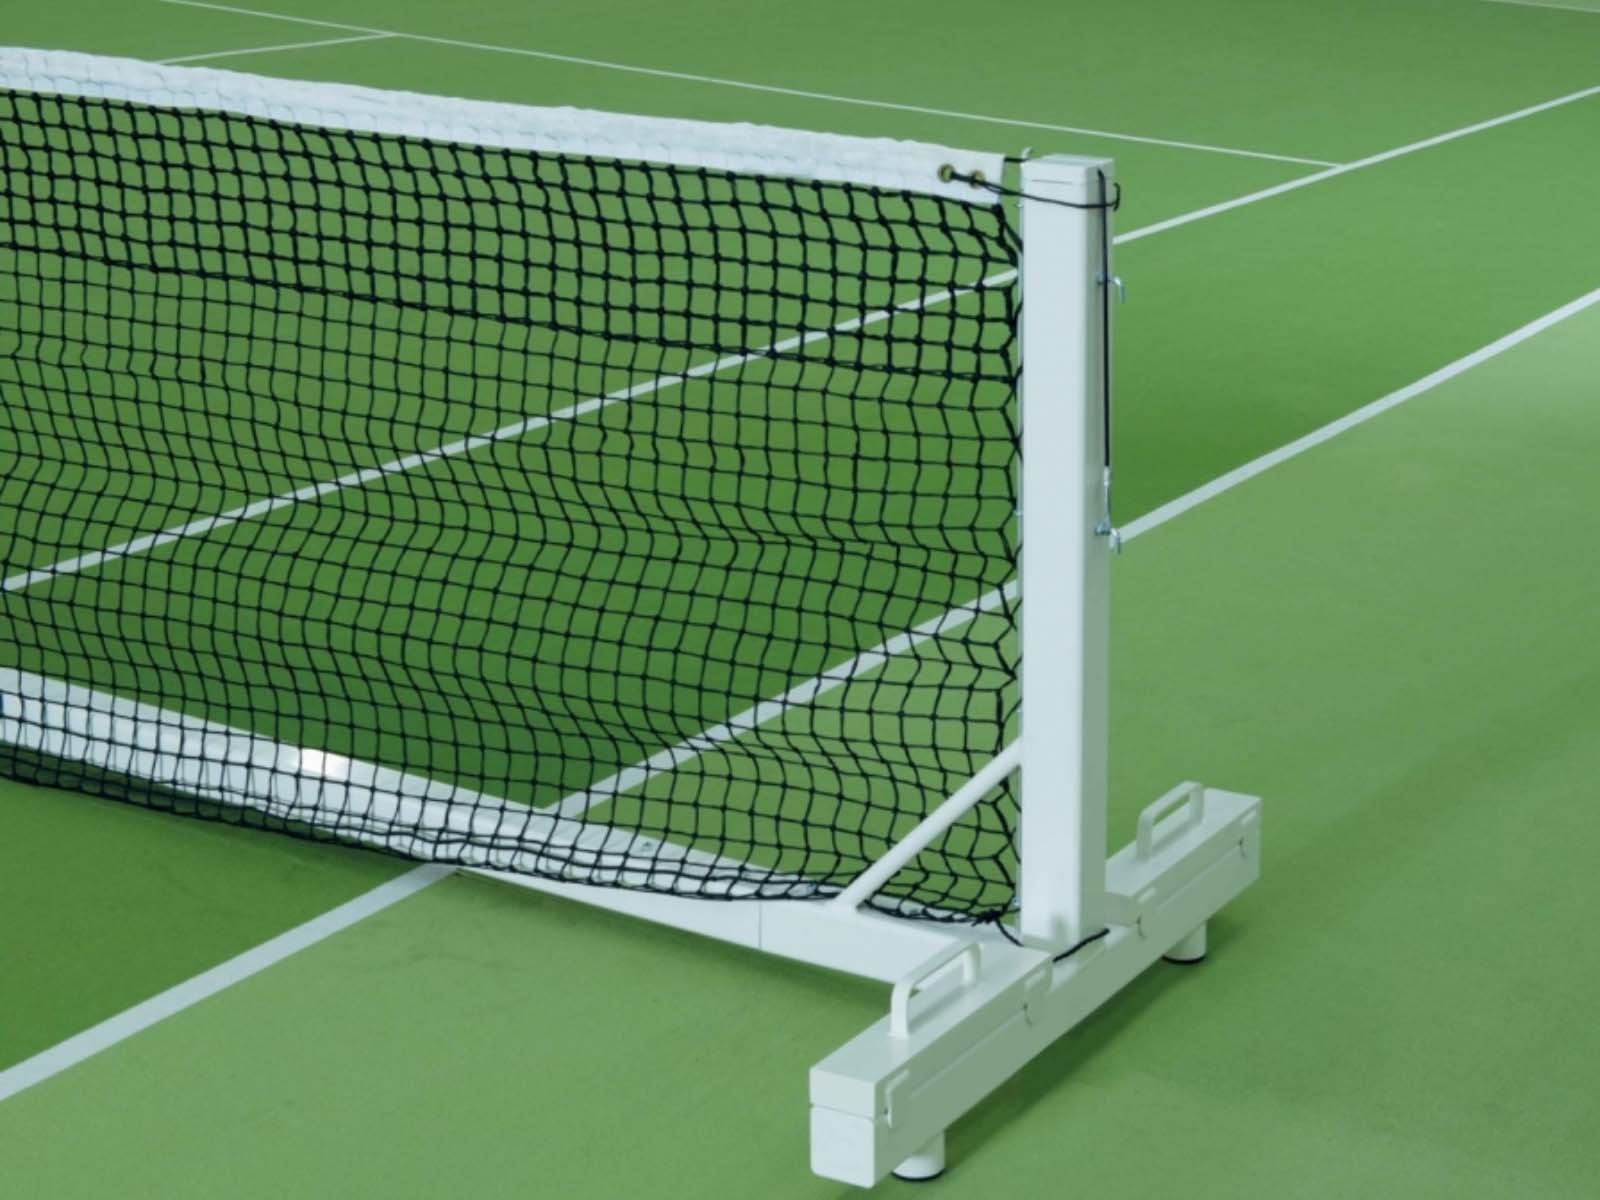 Теннис сетка игры. Court Royal теннисная сетка для тенниса. Сетка теннисная Court Royal tn20 (корт Роял, тн20) (черная). Теннисная сетка Торнео. Сборная теннисная стенка-сетка har-Tru.